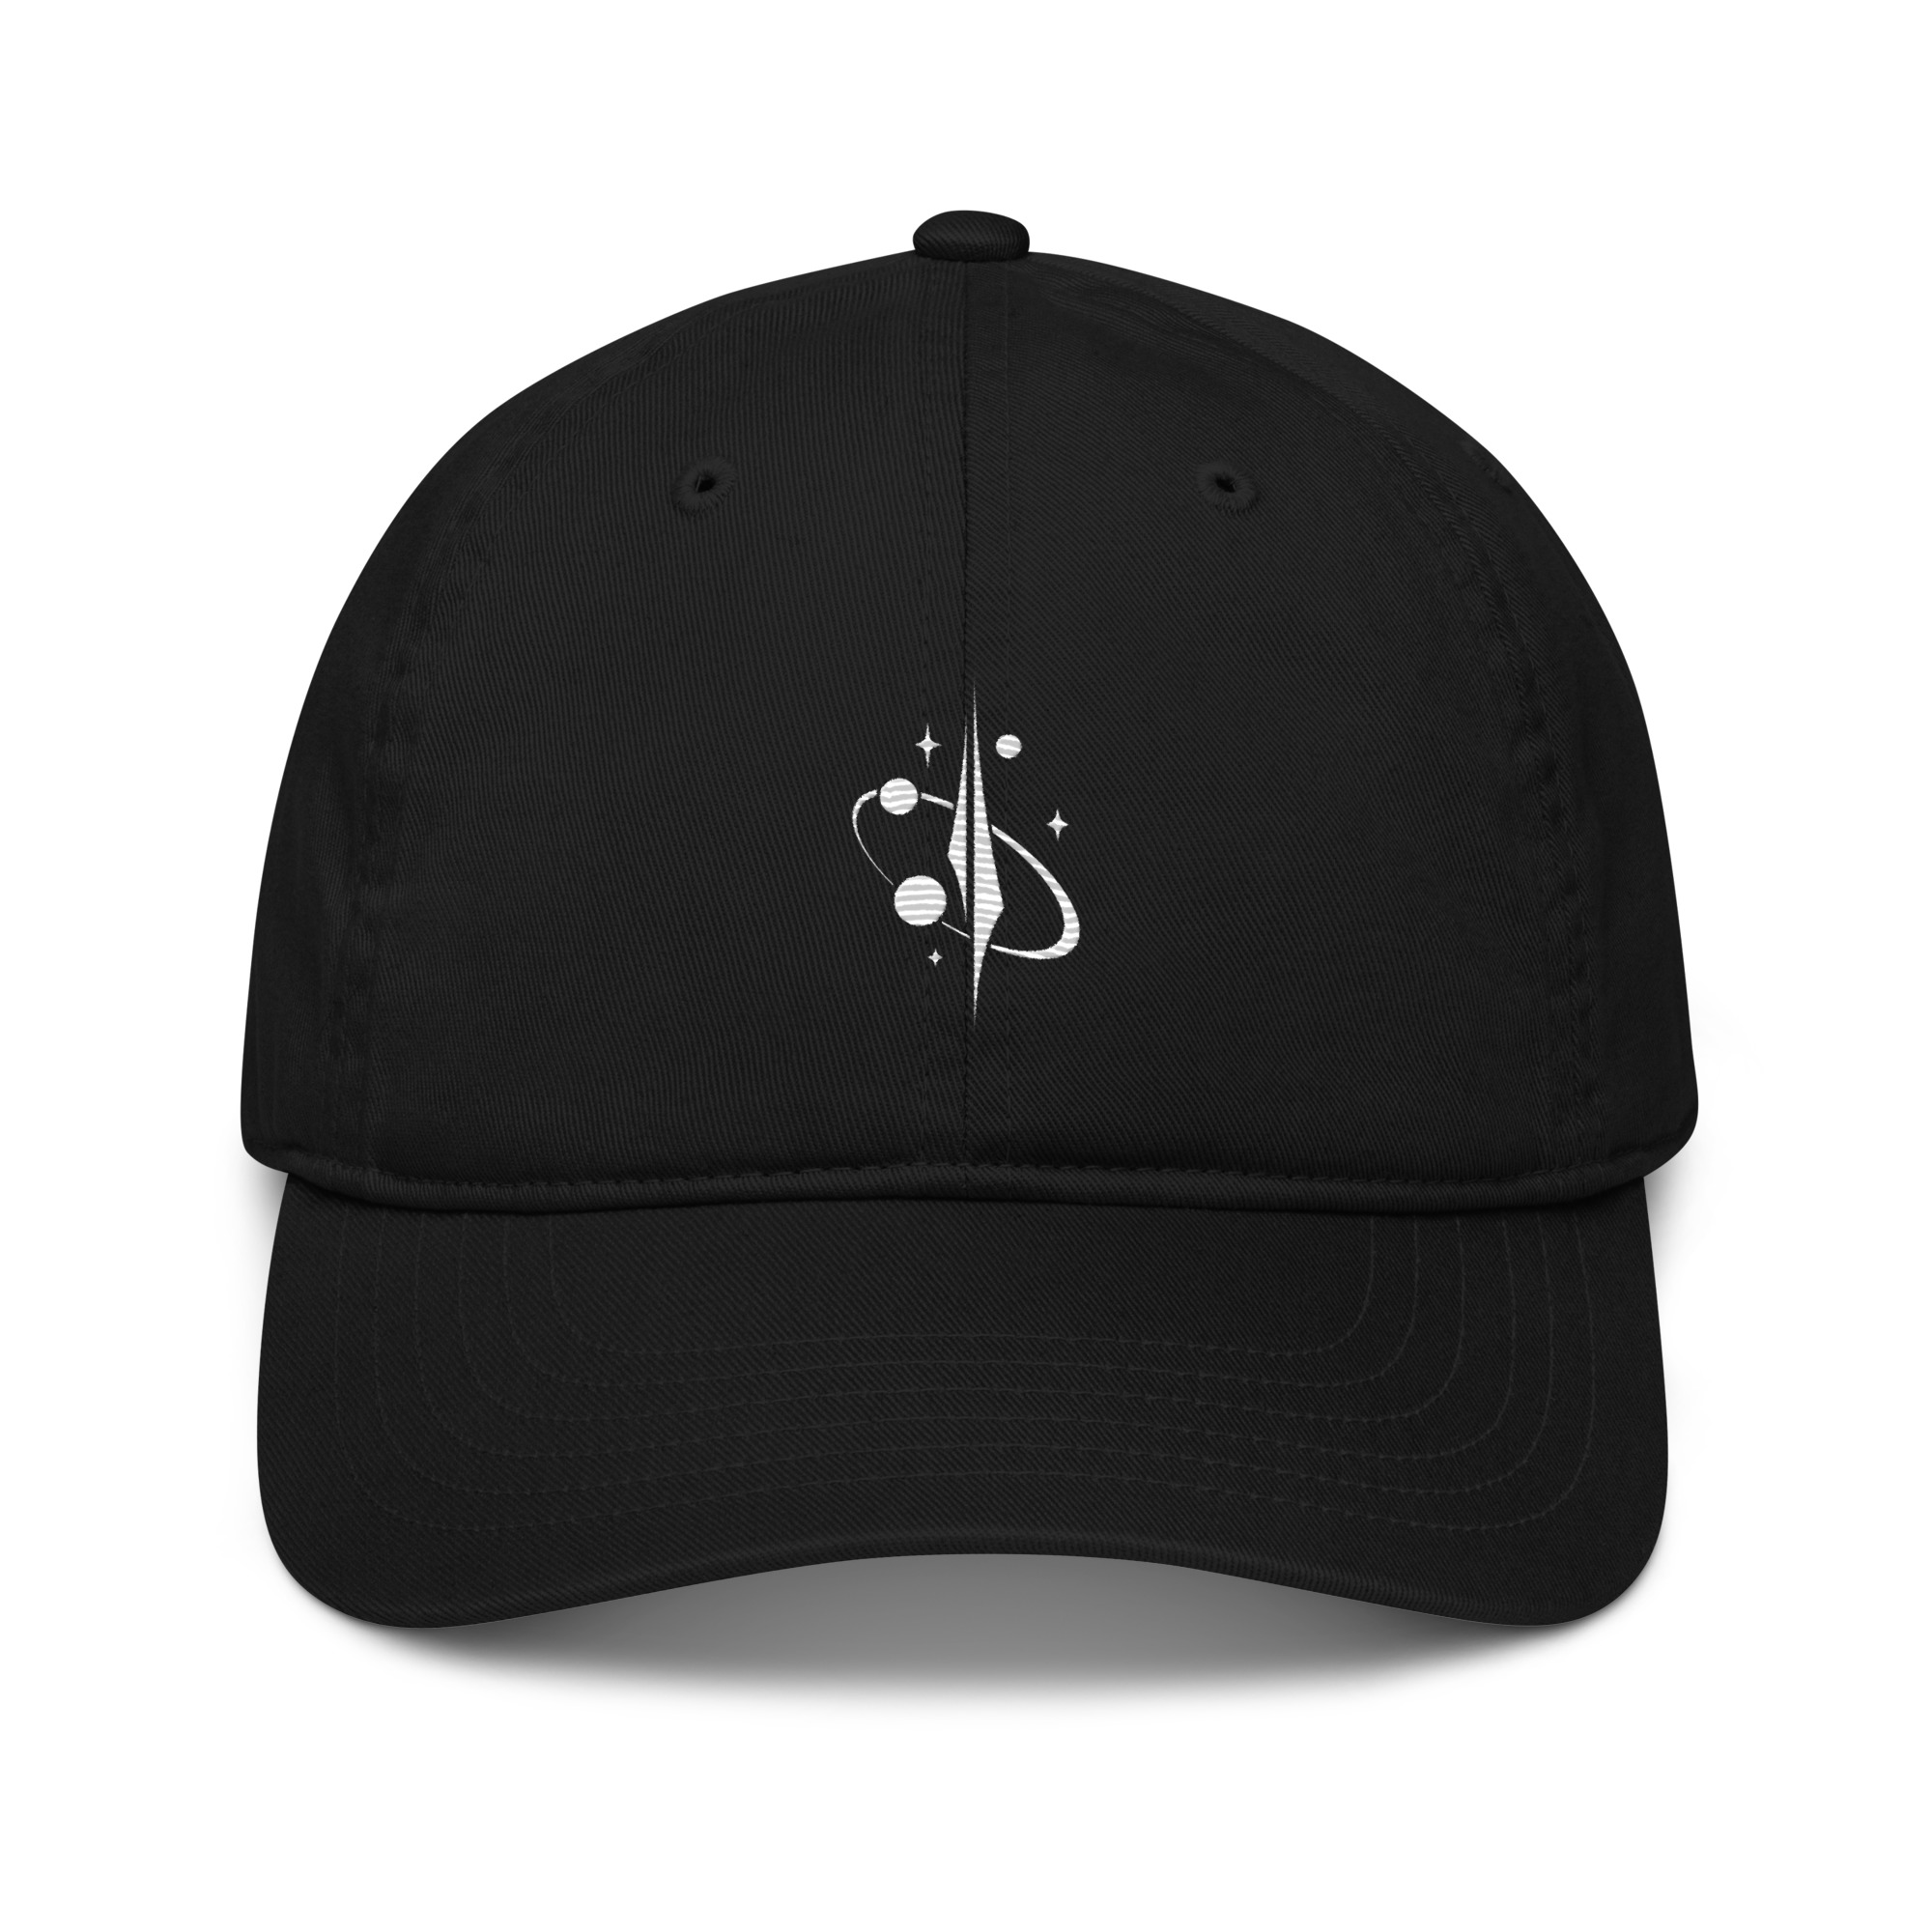 organic-baseball-cap-black-front-660a91d585d14.jpg